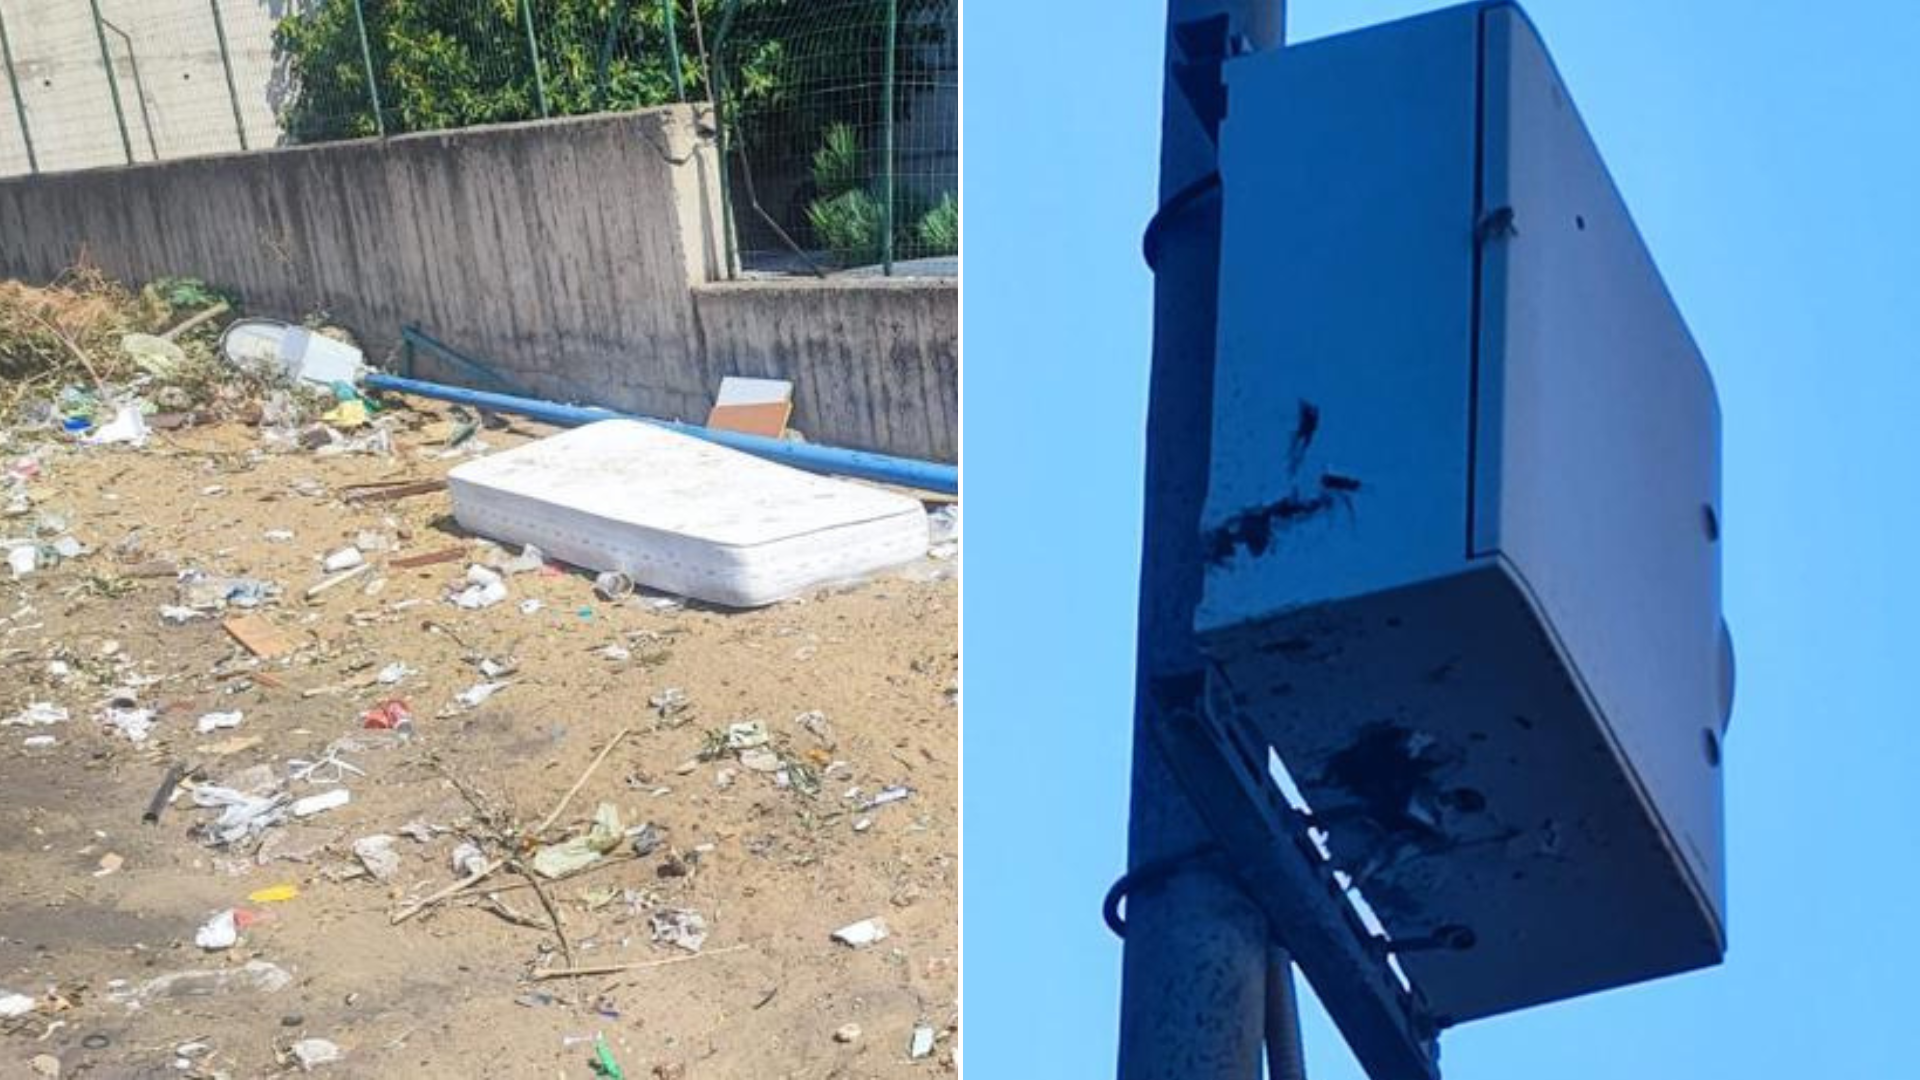 Distrutte altre due telecamere per contrastare l’abbandono dei rifiuti<br>Ecocar: «In totale cinque vandalizzate, danni da diecimila euro»